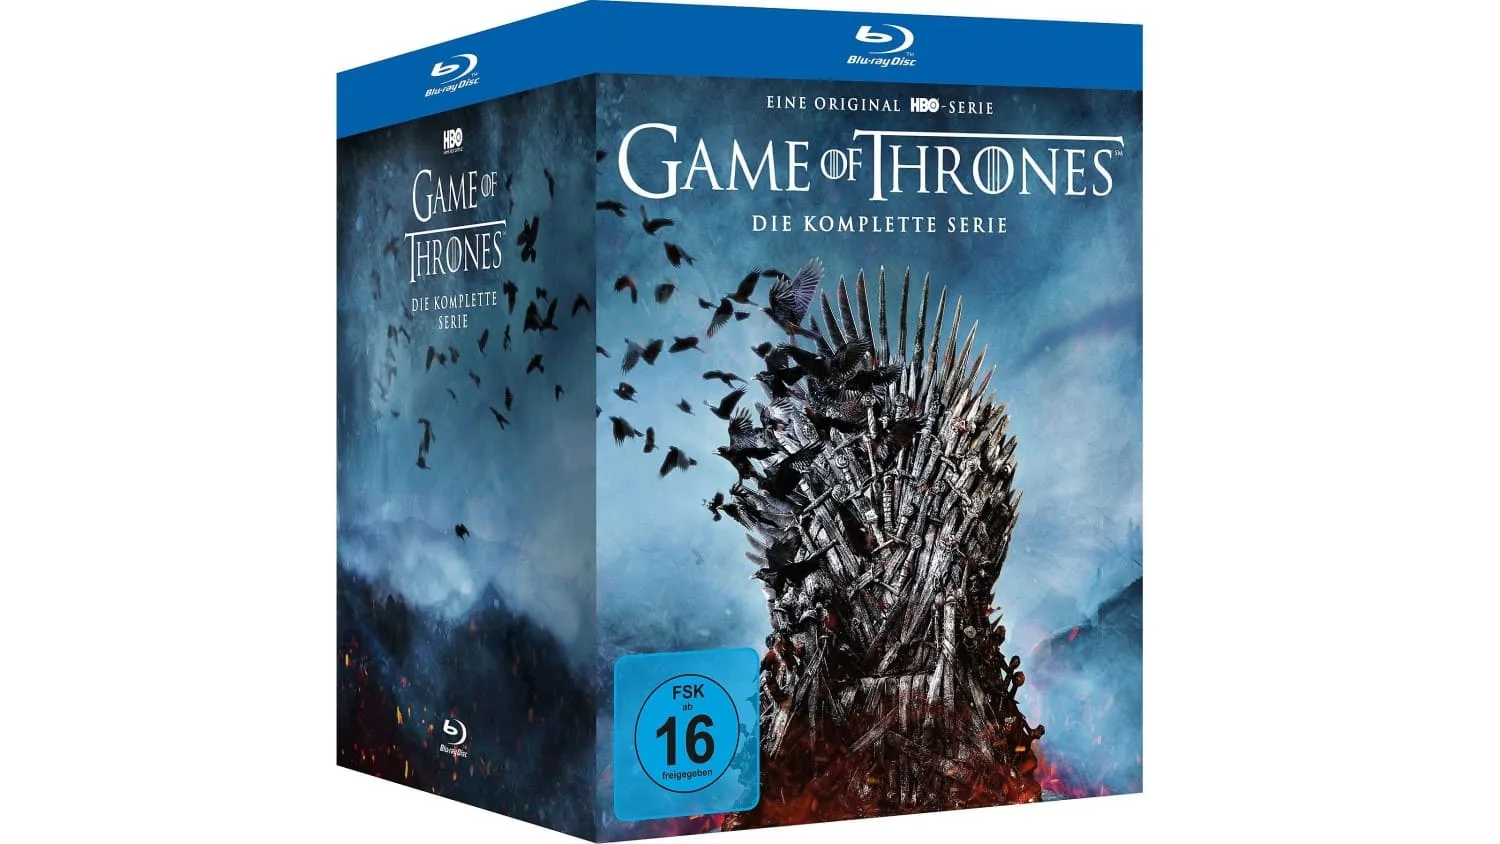 Game of Thrones - Die komplette Serie Blu-ray in einer Box